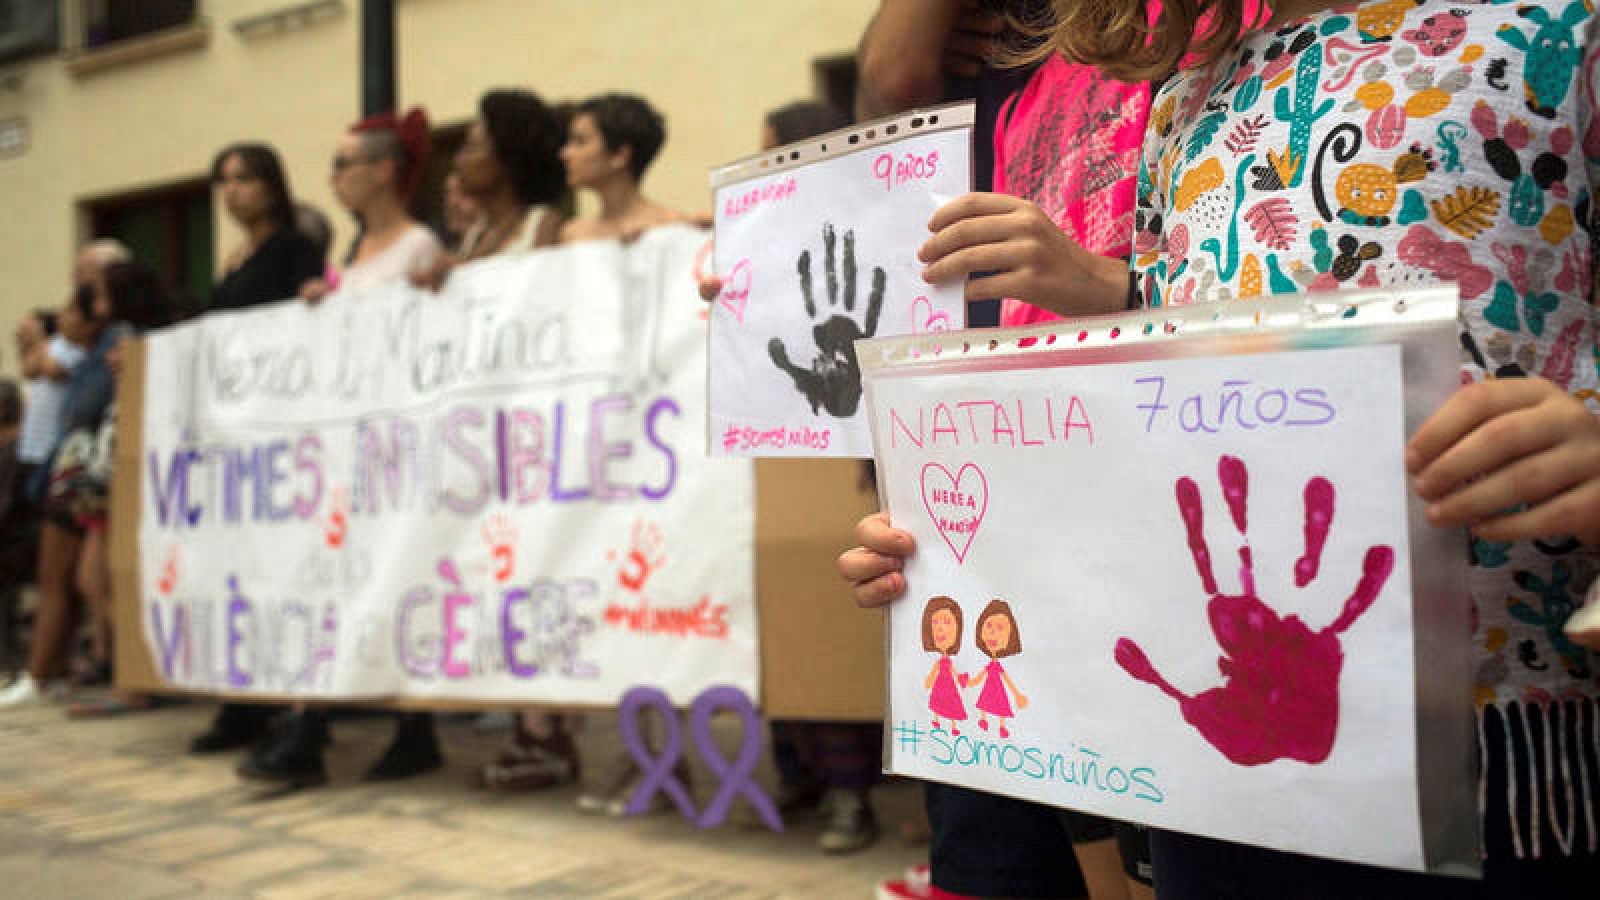  Asesinadas 972 mujeres y 27 menores por violencia machista en España desde 2003 